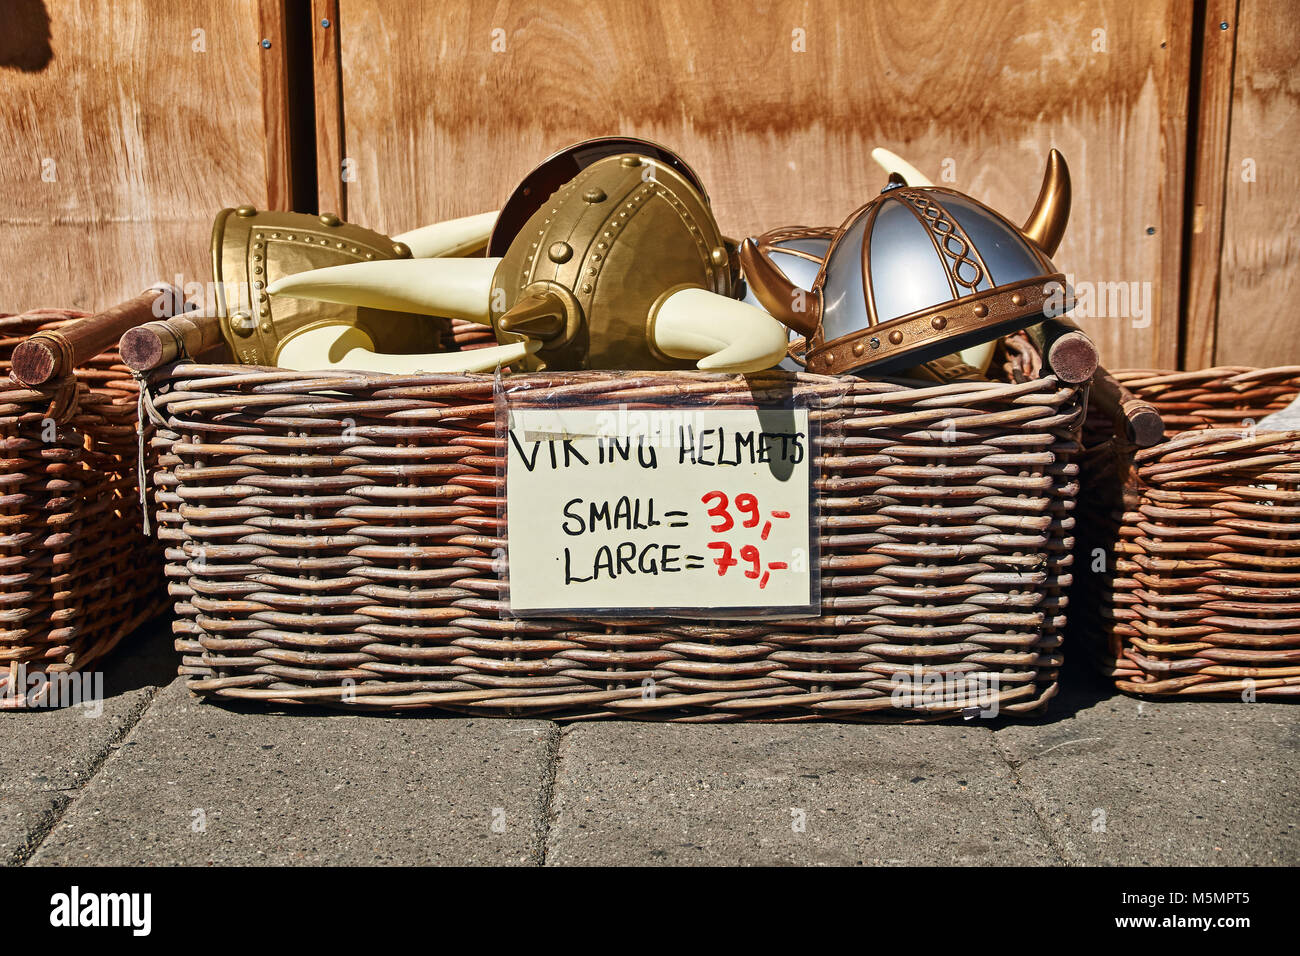 Oslo, Norvège : le 26 avril 2017 - casques à cornes jouet en style norvégien traditionnel dans panier en osier sont vendus sur la rue en face d'un cadeau souvenir sh Banque D'Images